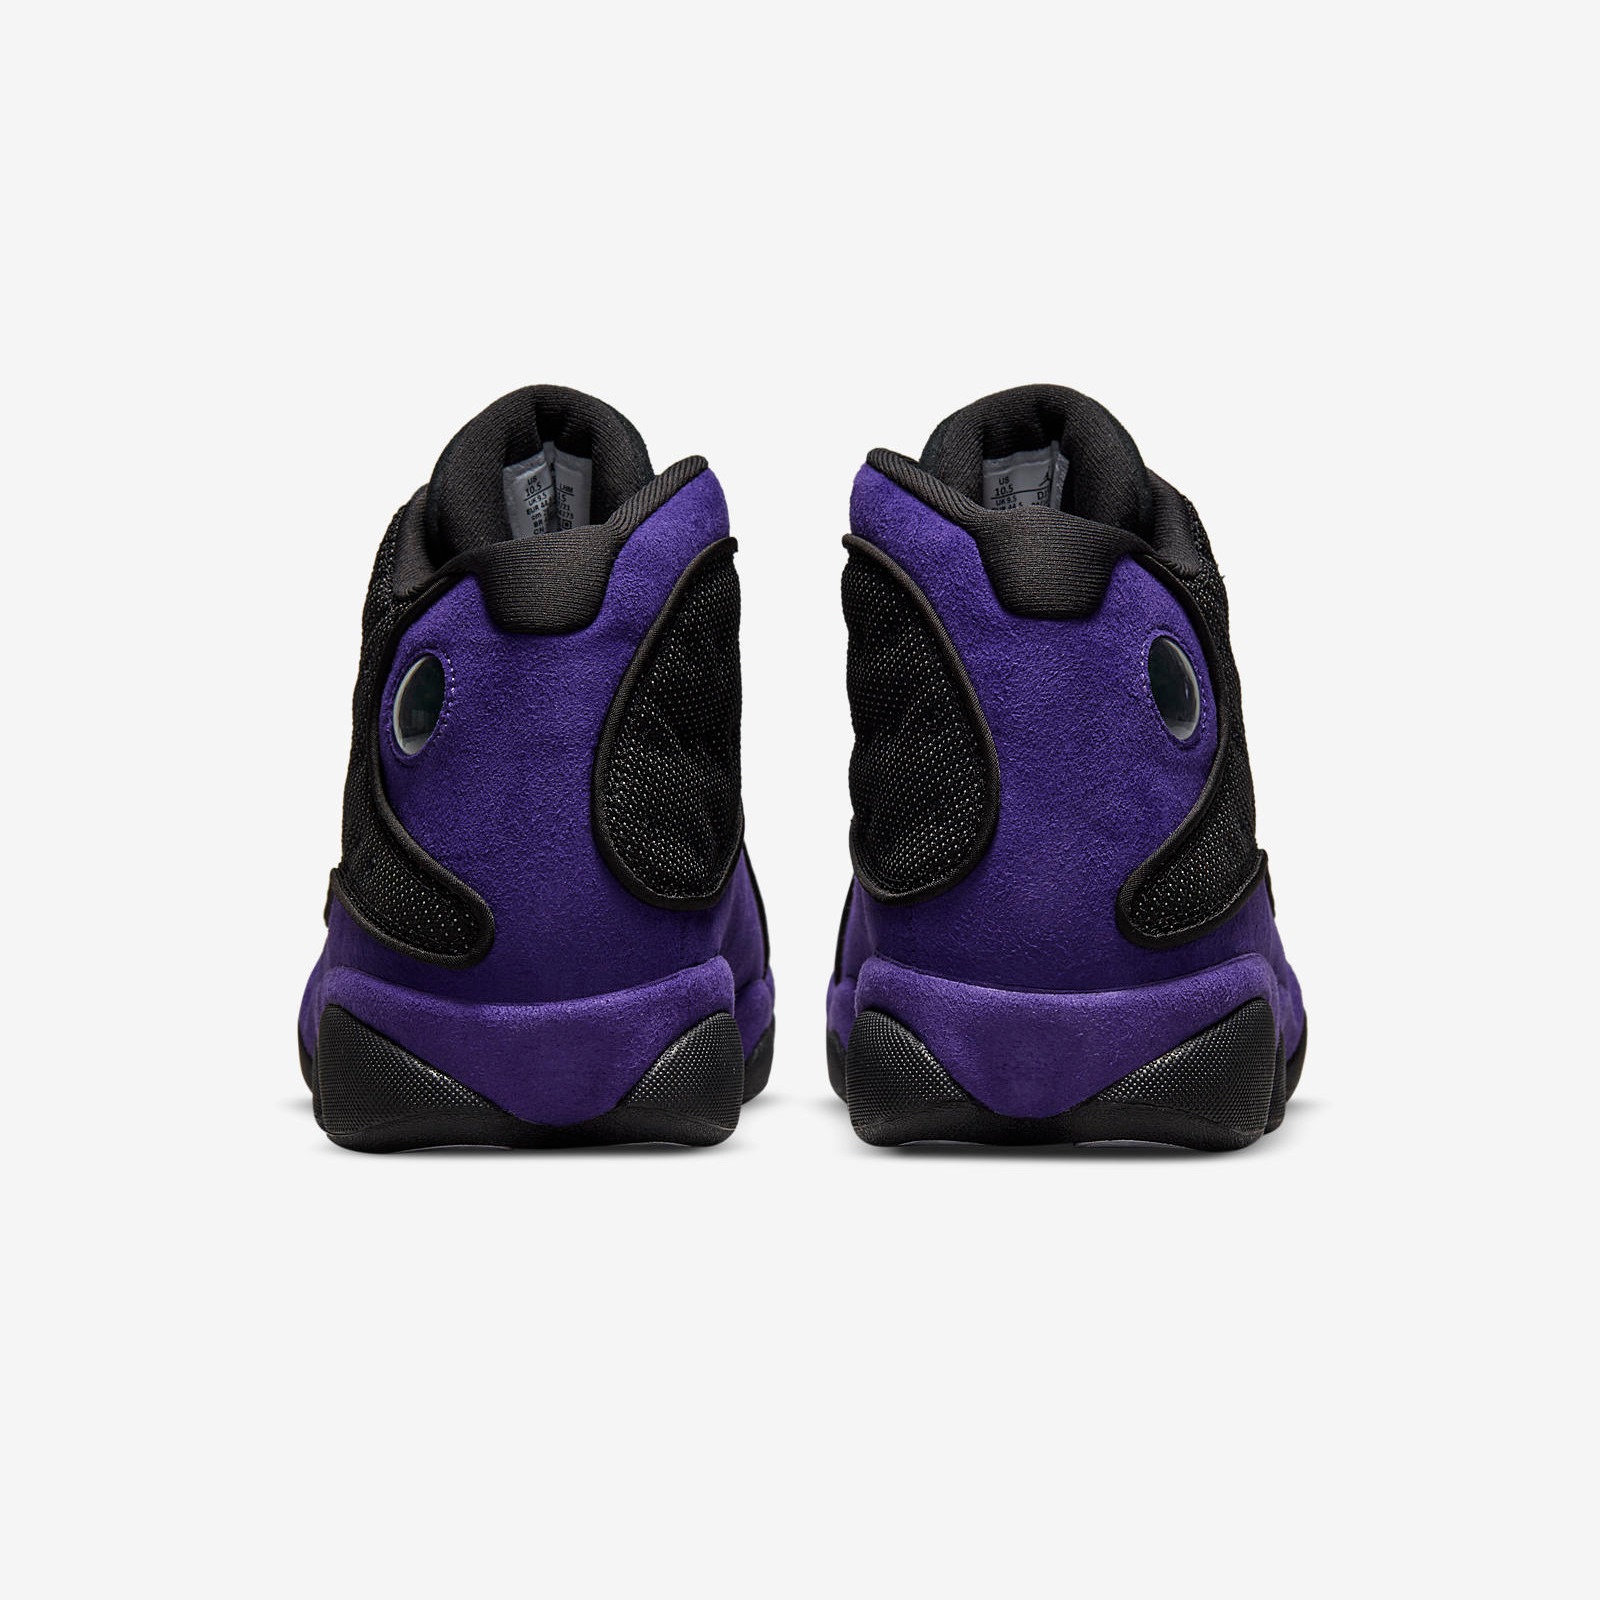 Air Jordan 13 Retro
« Court Purple »